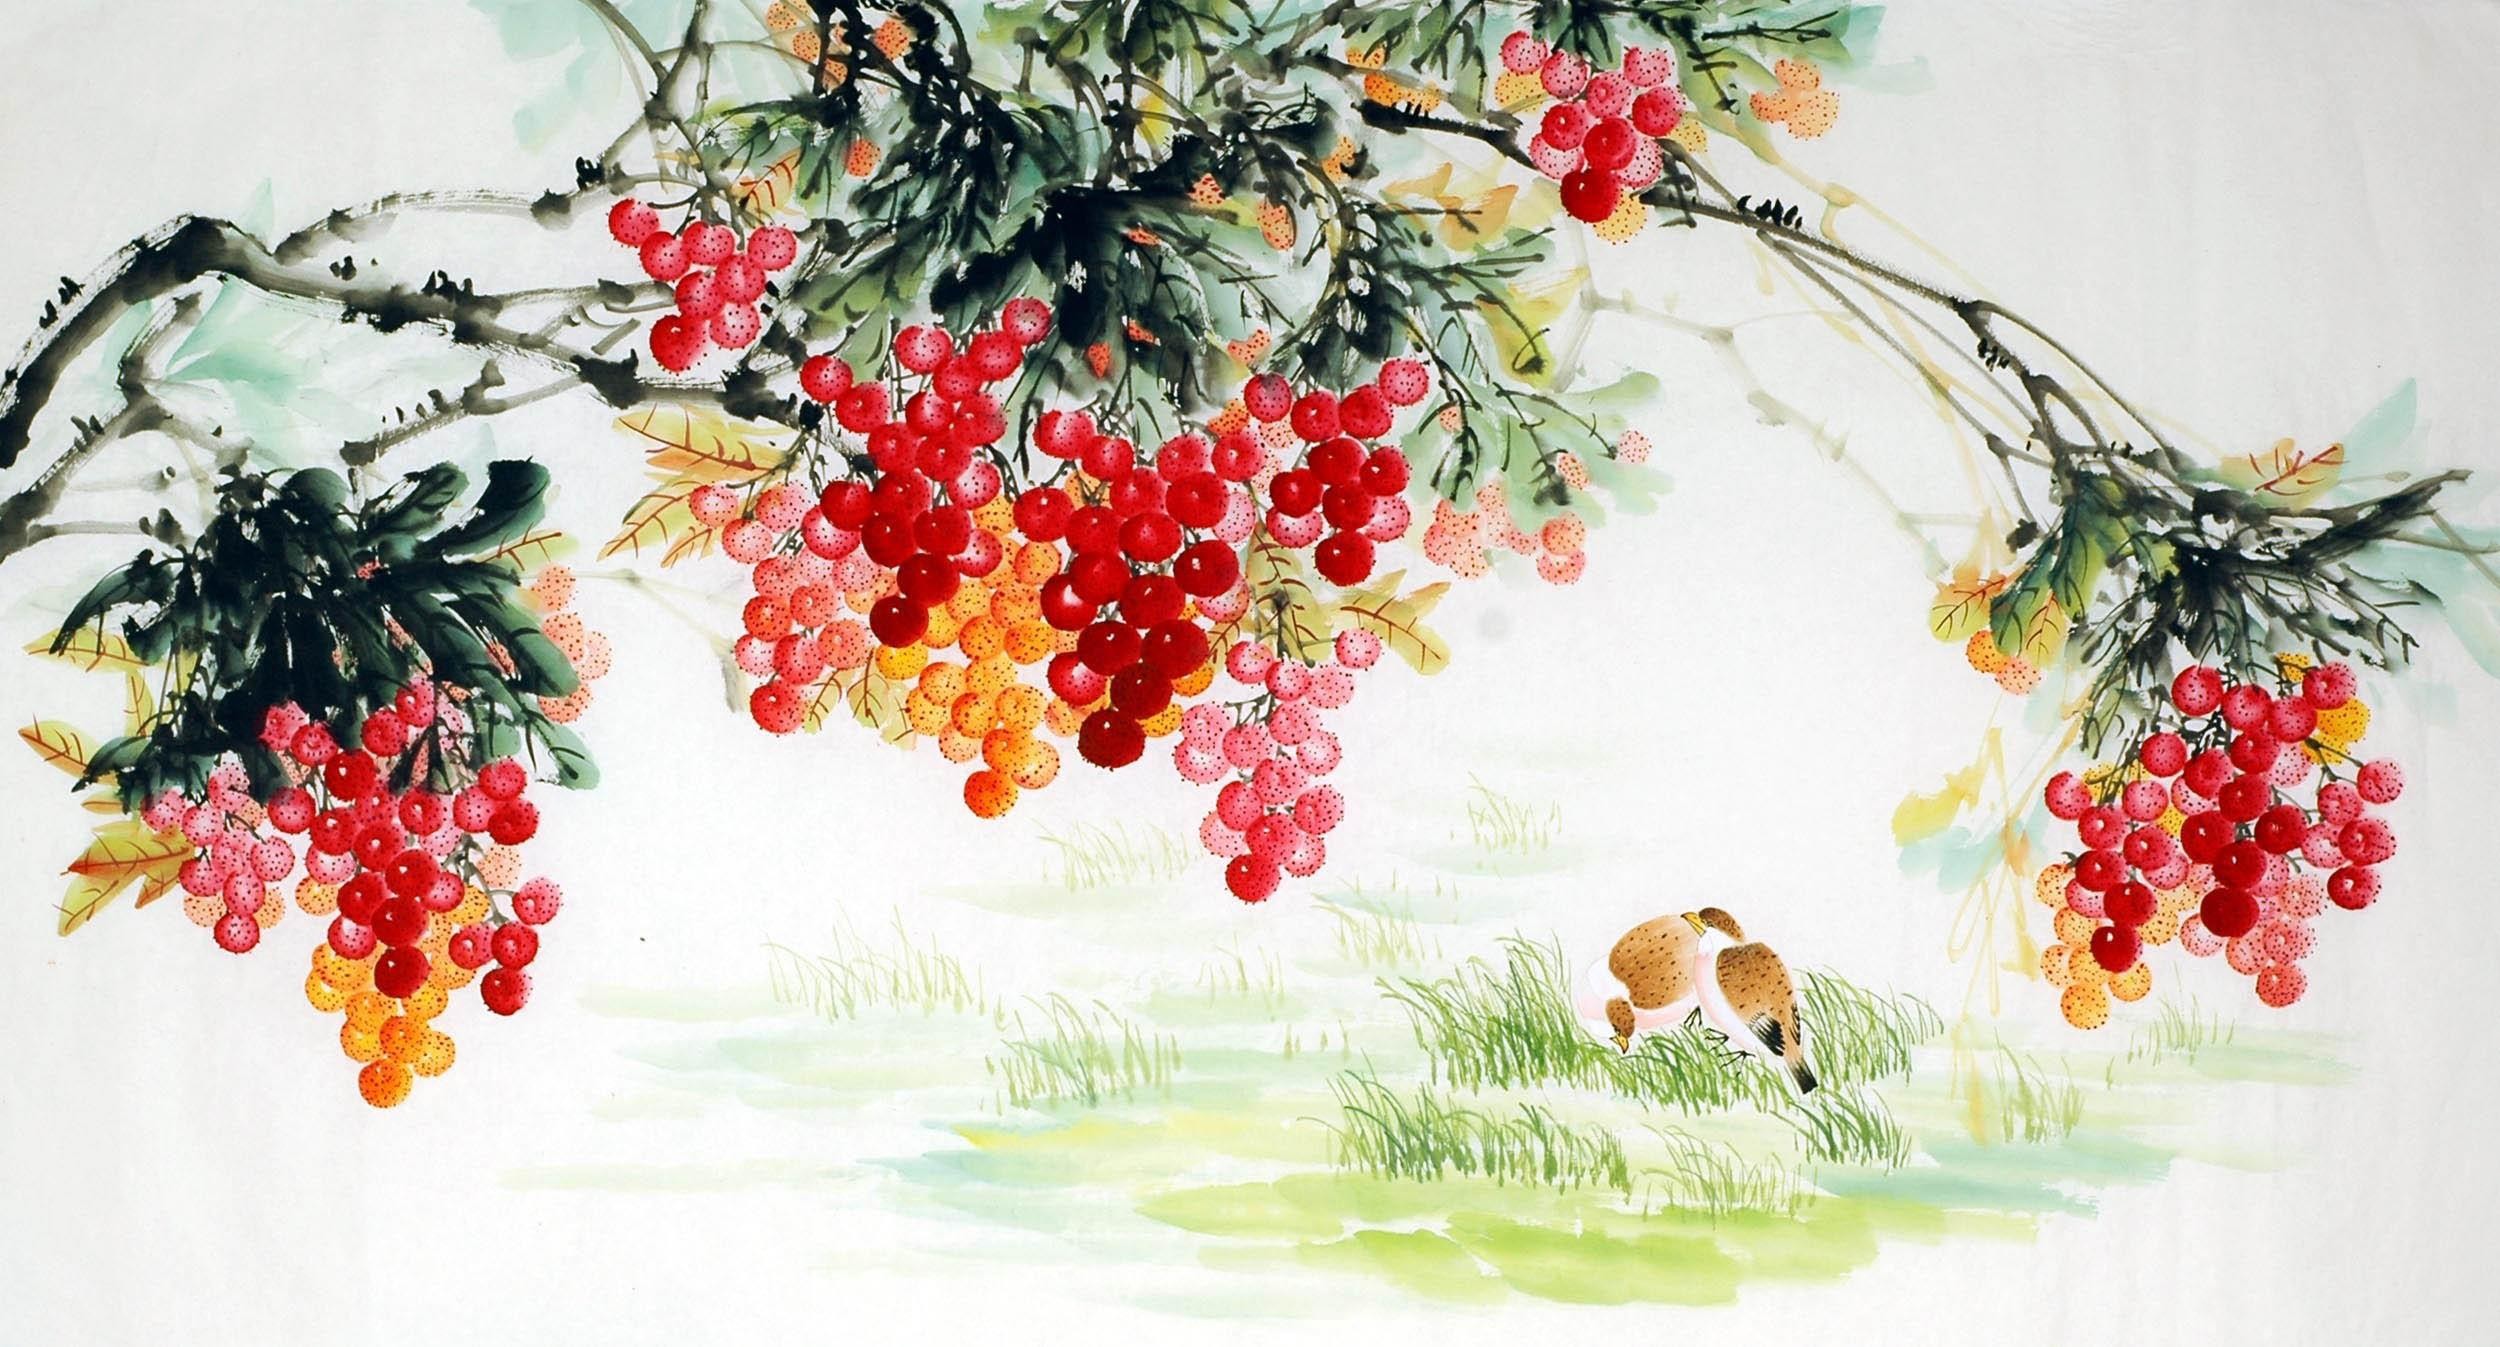 Chinese Lotus Painting - CNAG008177